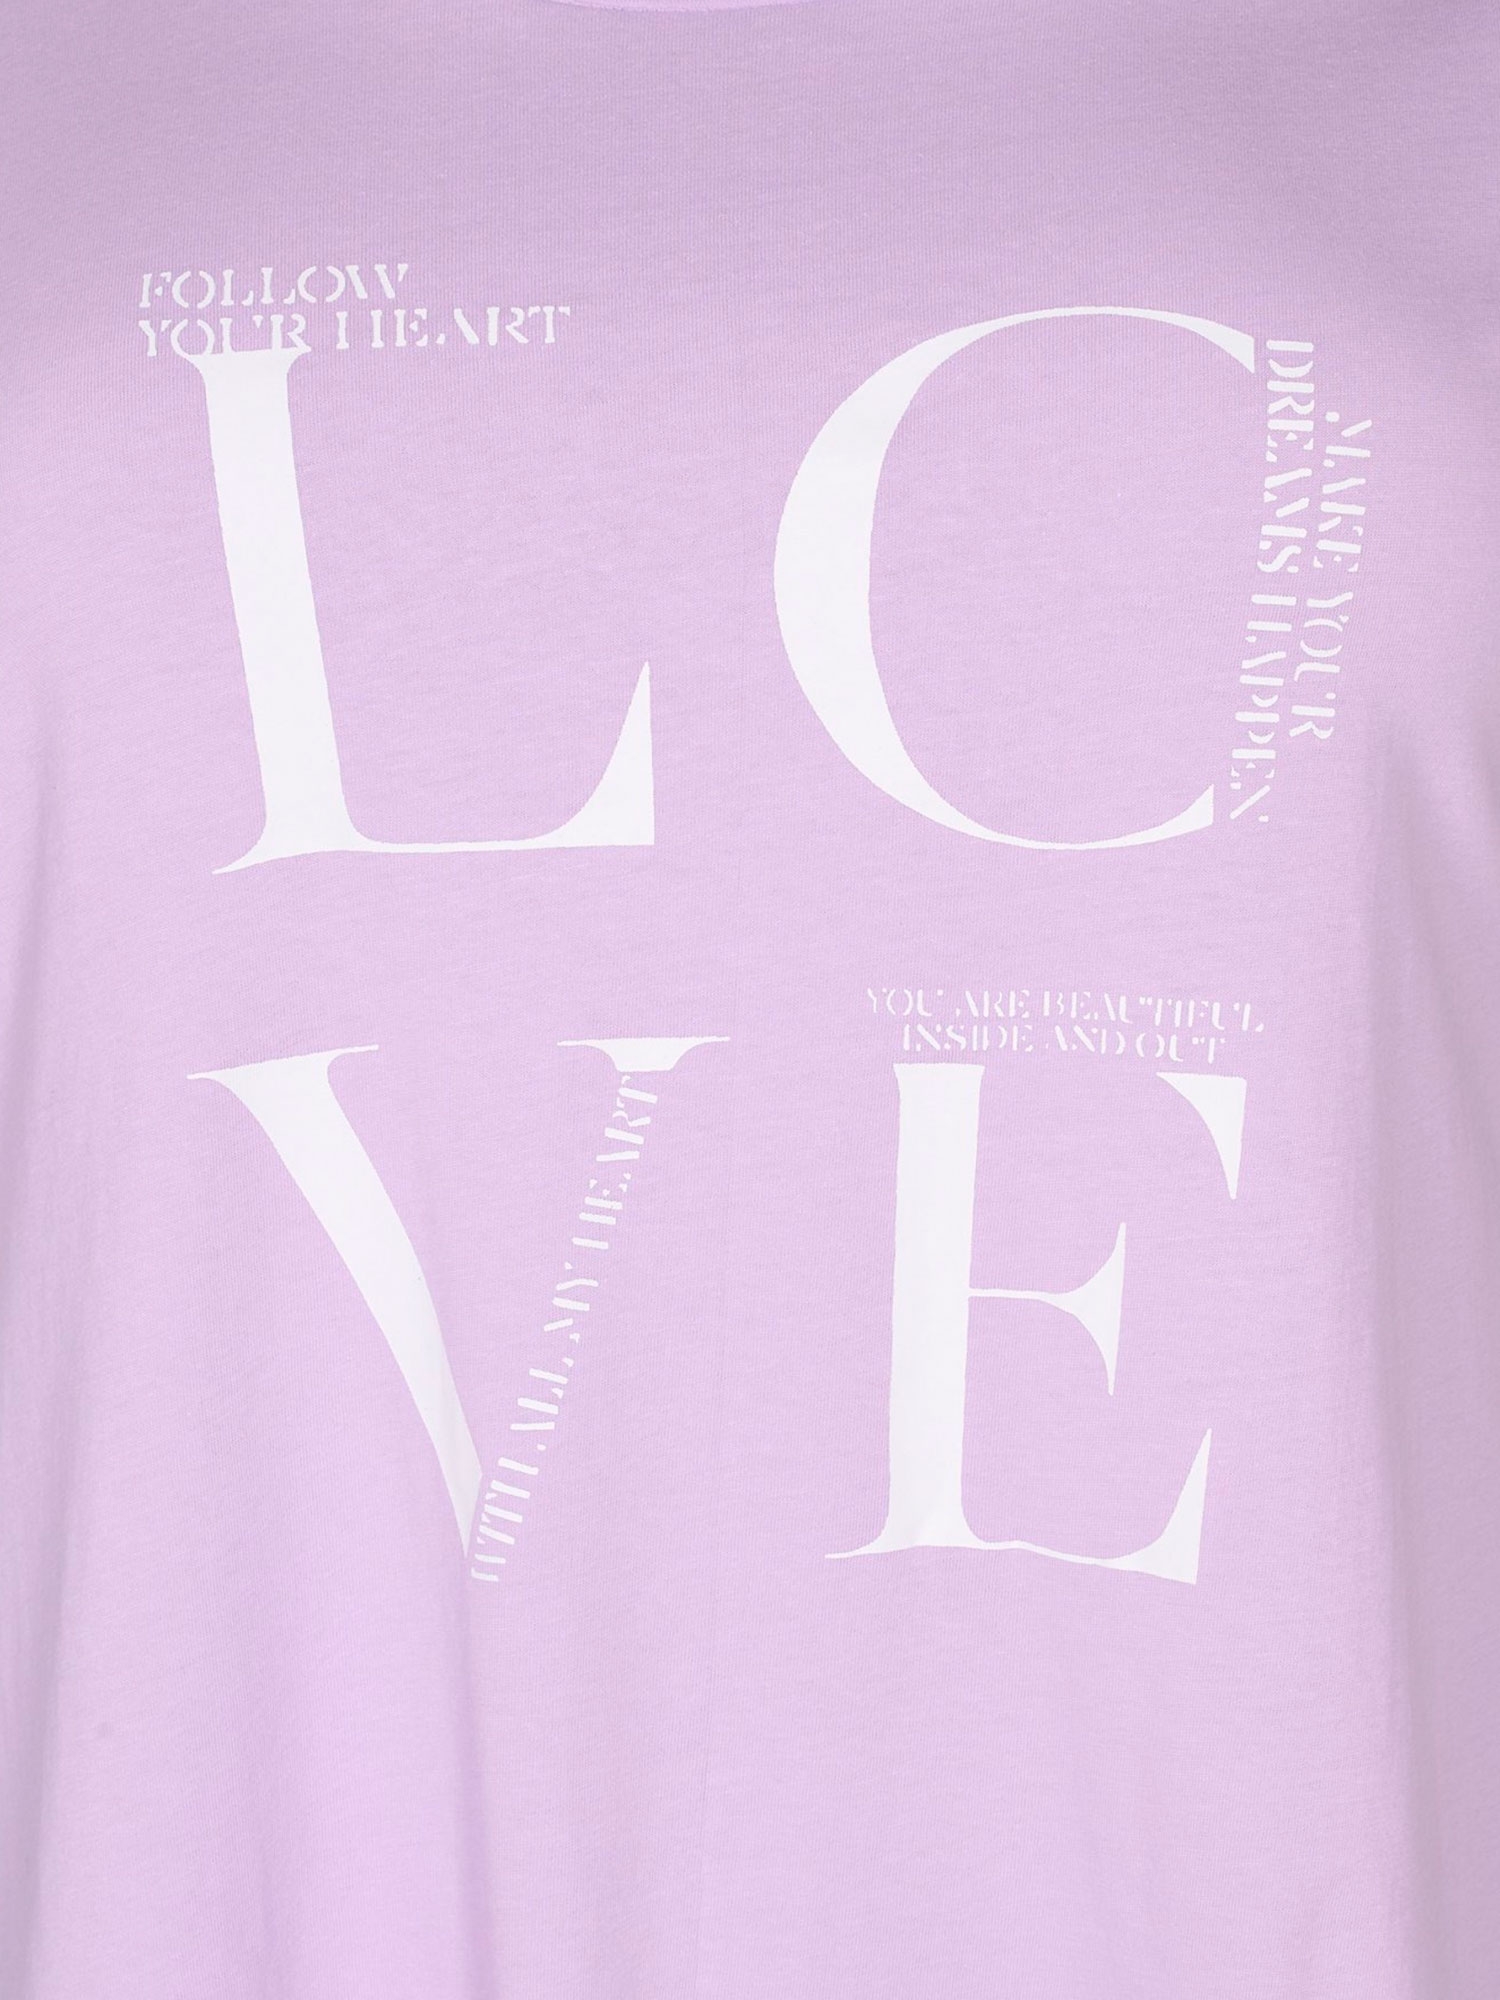 Lys lilla T-skjorte i A-fasong med 'LOVE' print fra Zizzi